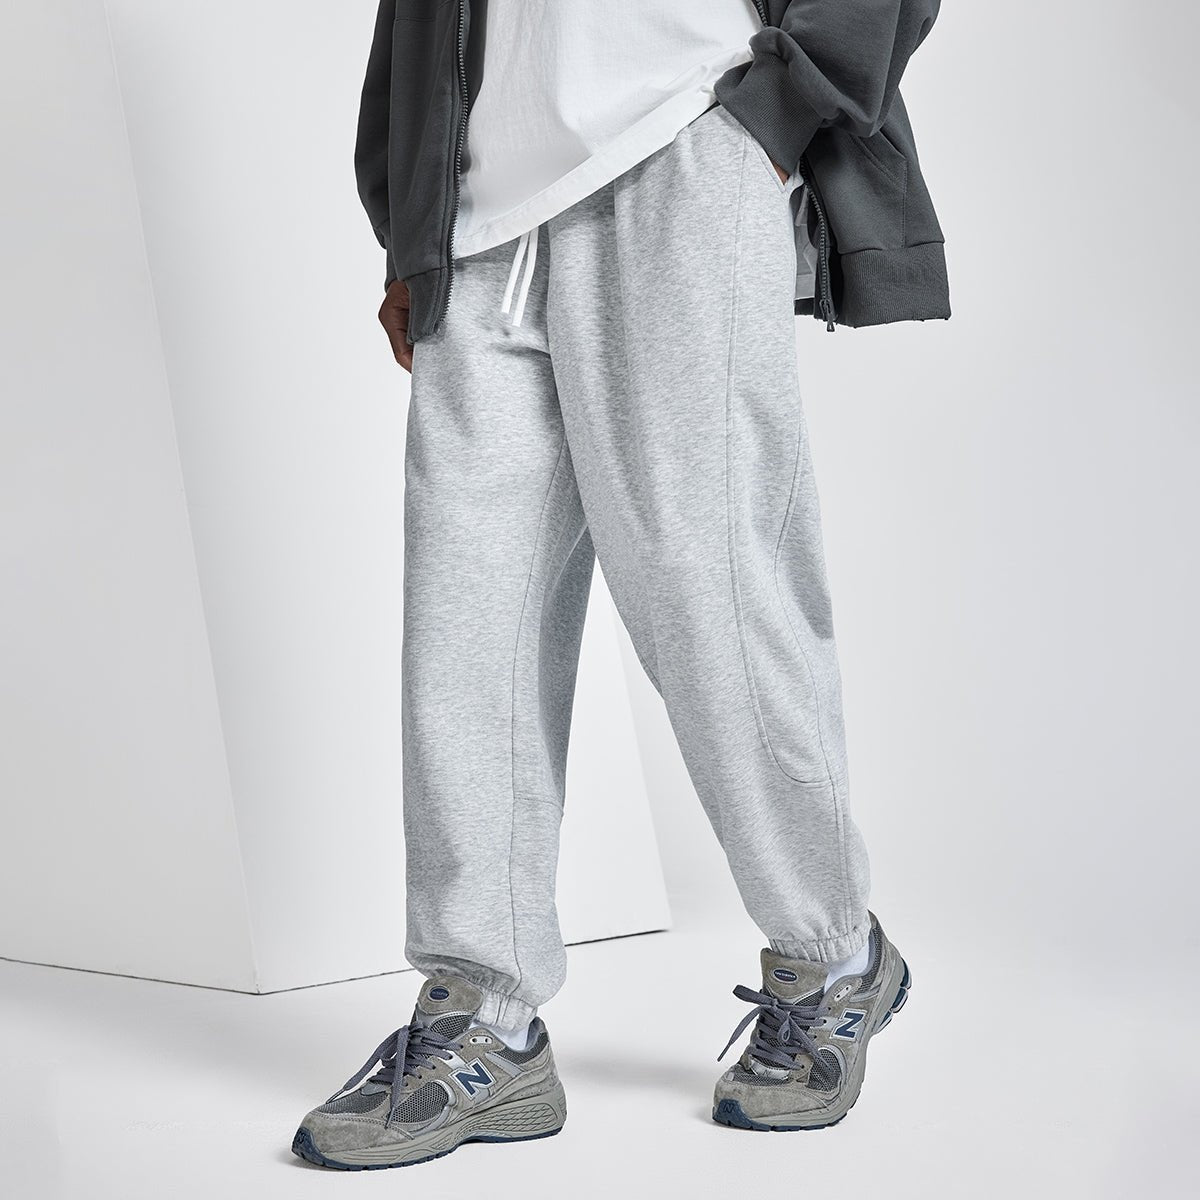 Downtown Comfort Fit Grey Sweatpants - 0cm